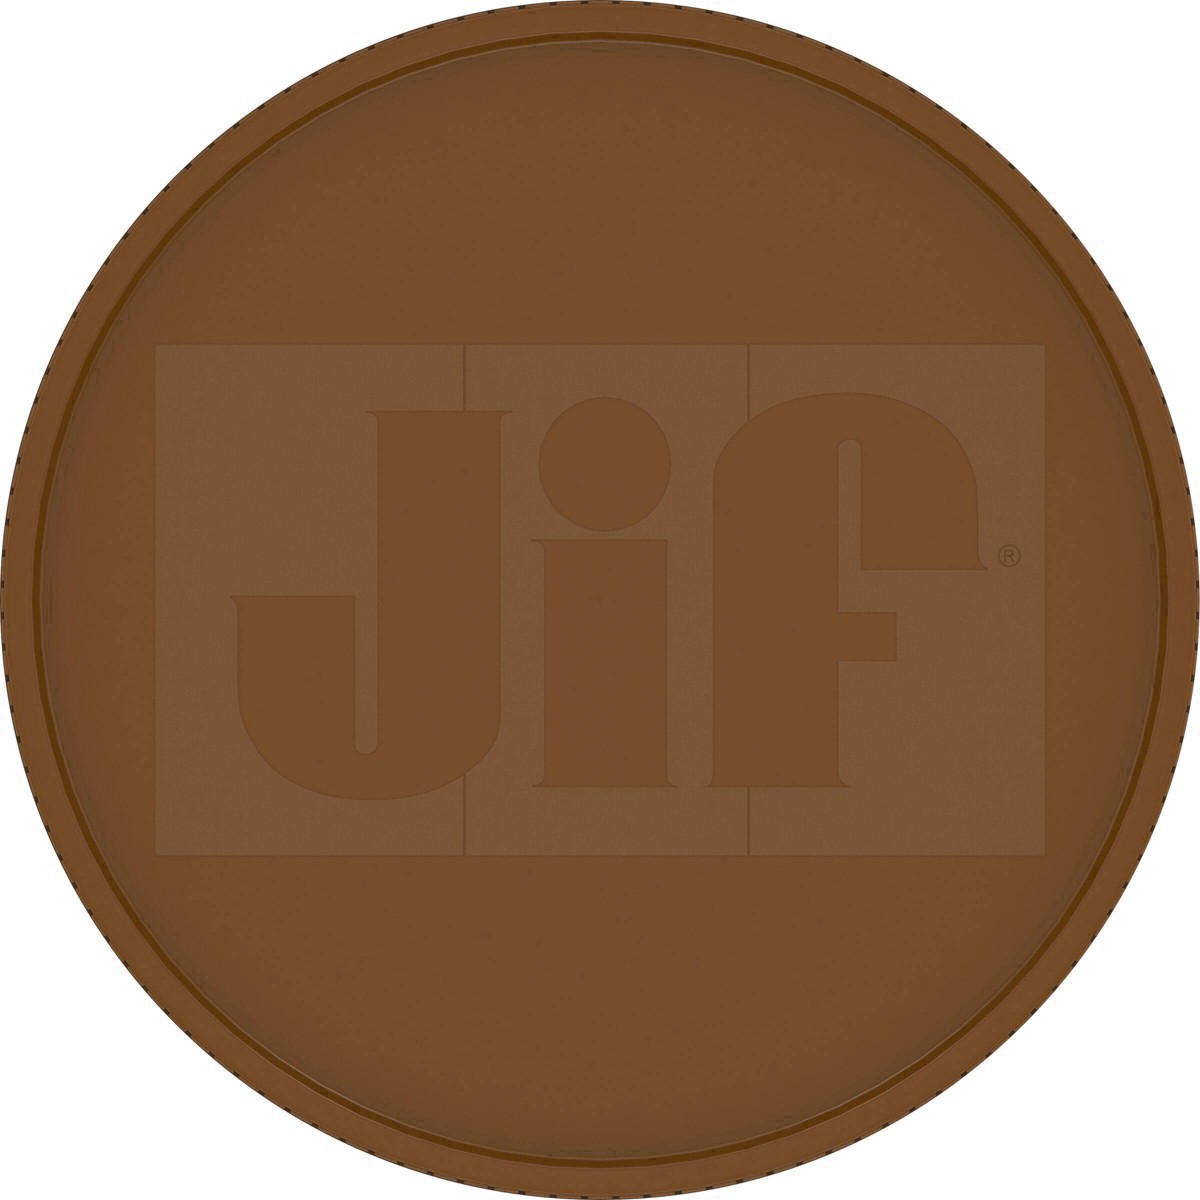 slide 27 of 41, Jif Natural Crunchy Peanut Butter, 16 oz